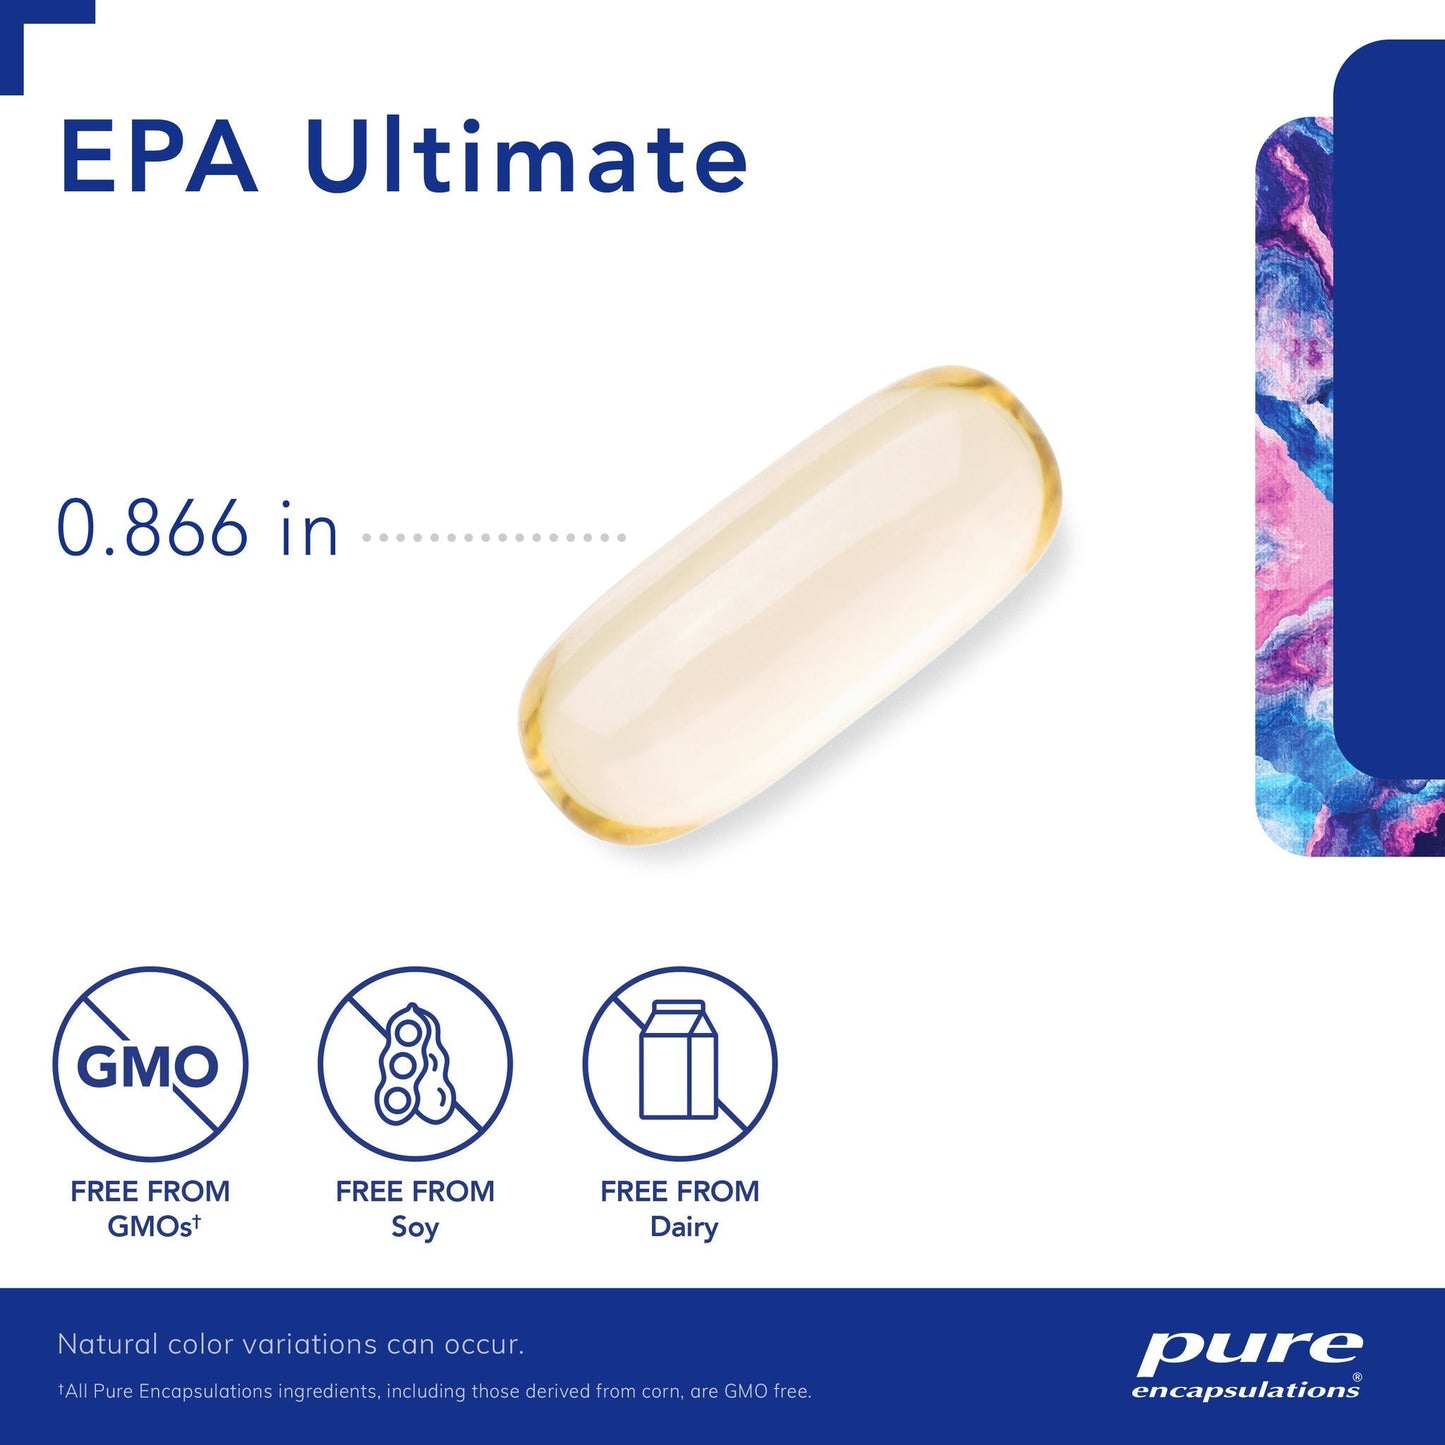 EPA Ultimate